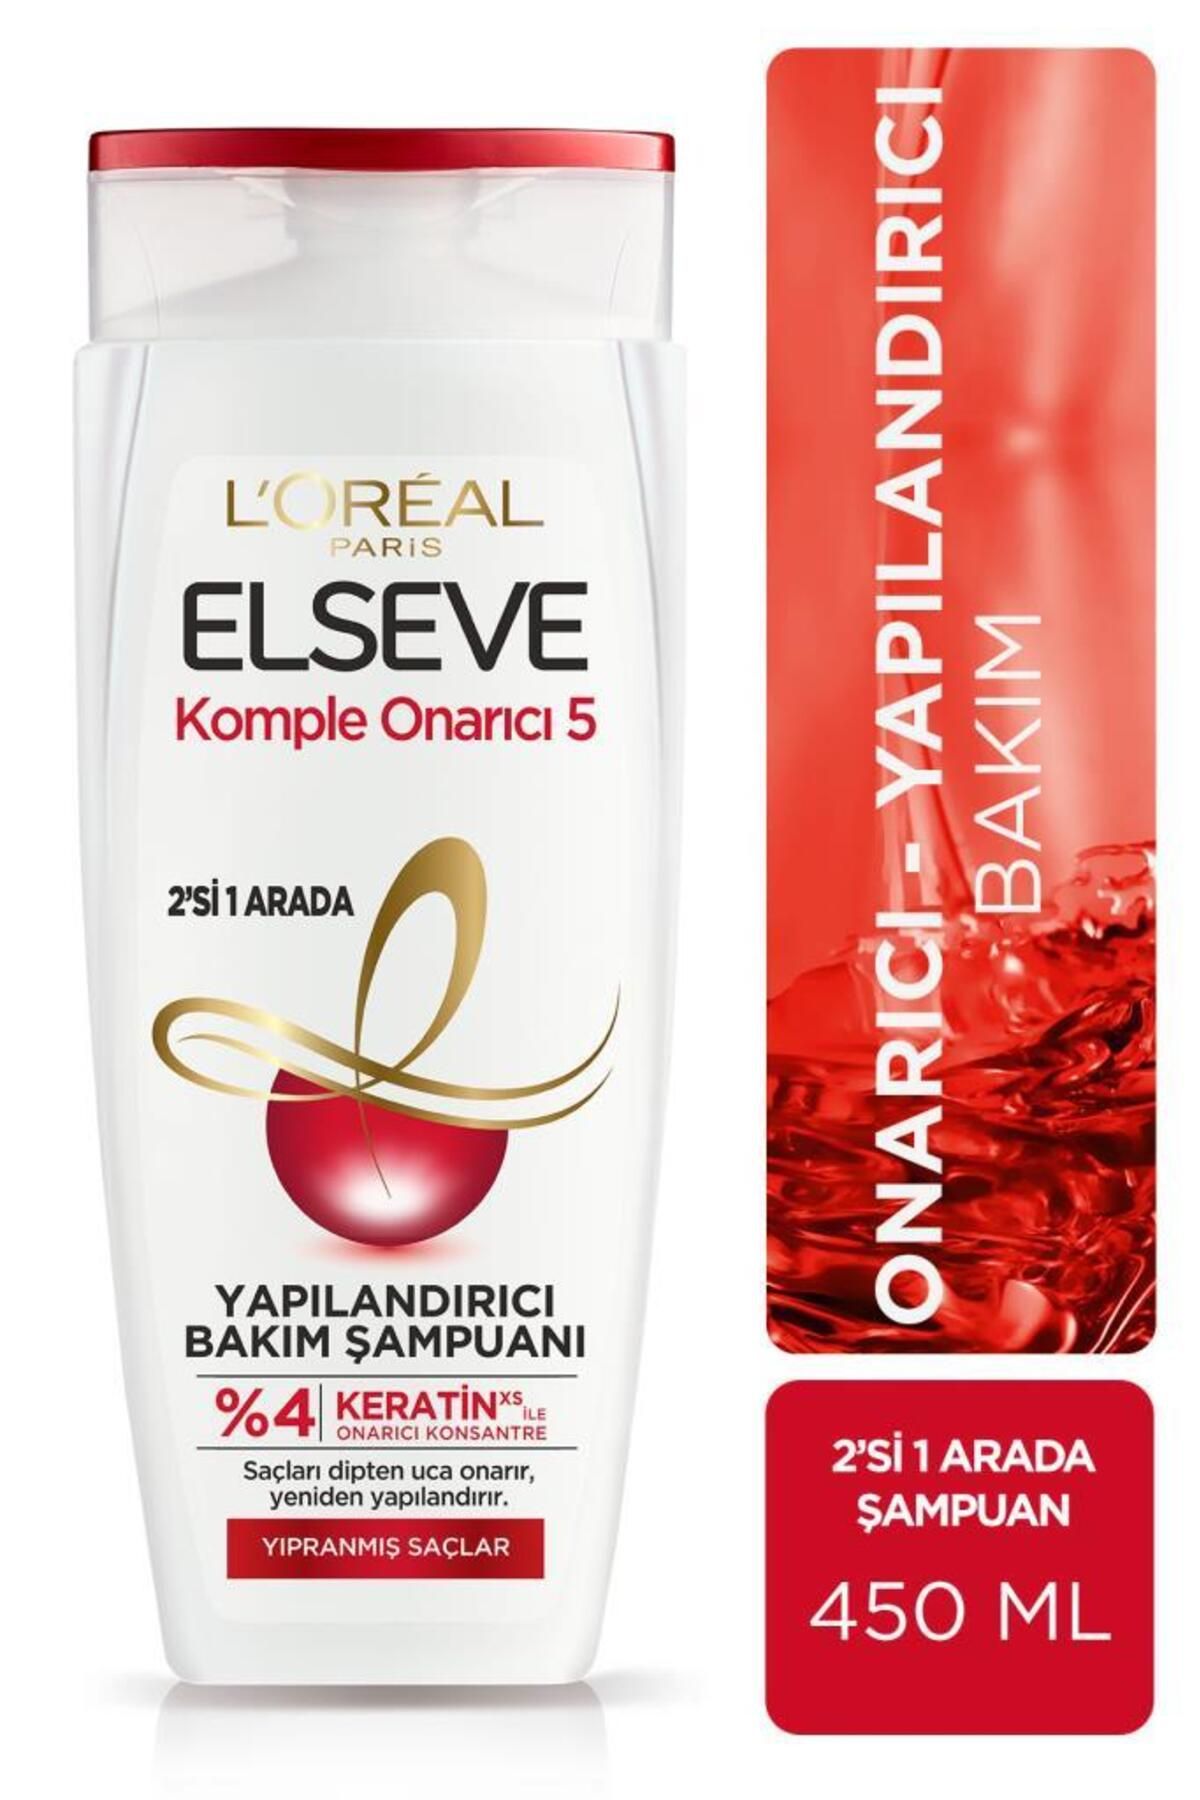 Elseve L'oréal Paris Komple Onarıcı 5 Yapılandırıcı Bakım Şampuanı 2'si 1 Arada 450 ml